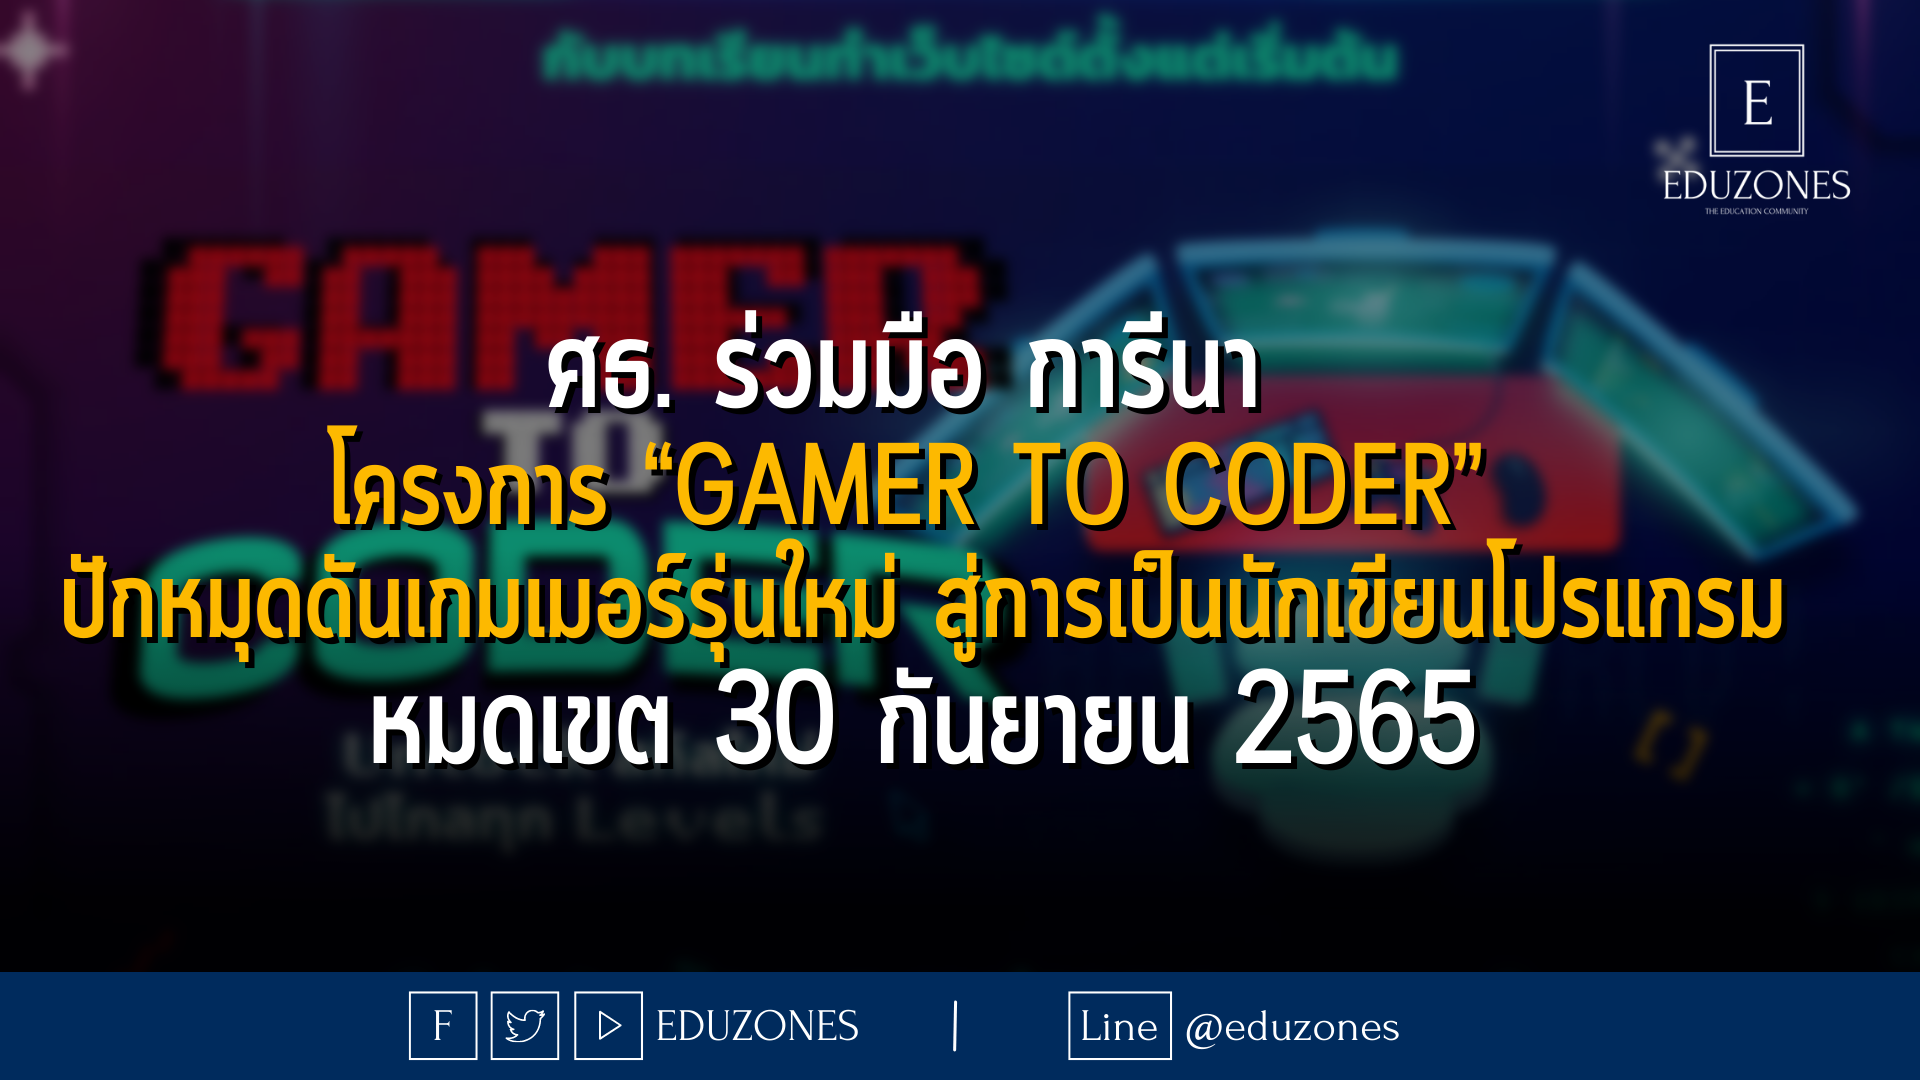 ศธ. ร่วมมือ การีนา  โครงการ “Gamer to Coder”  ปักหมุดดันเกมเมอร์รุ่นใหม่ สู่การเป็นนักเขียนโปรแกรม หมดเขต 30 กันยายน 2565